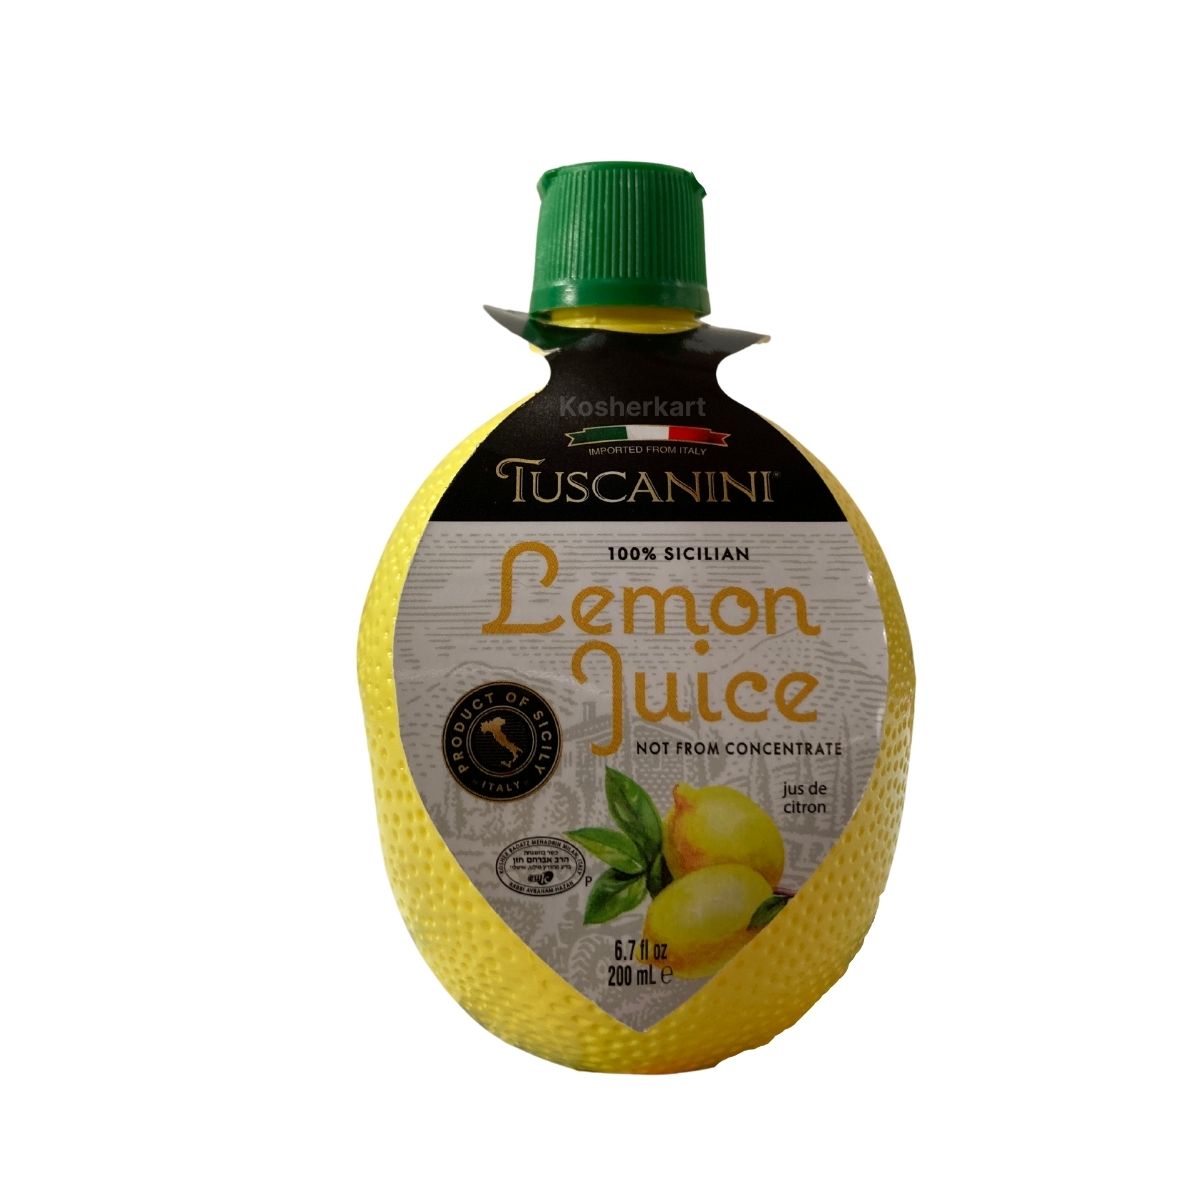 Tuscanini Lemon Juice 6.7 oz